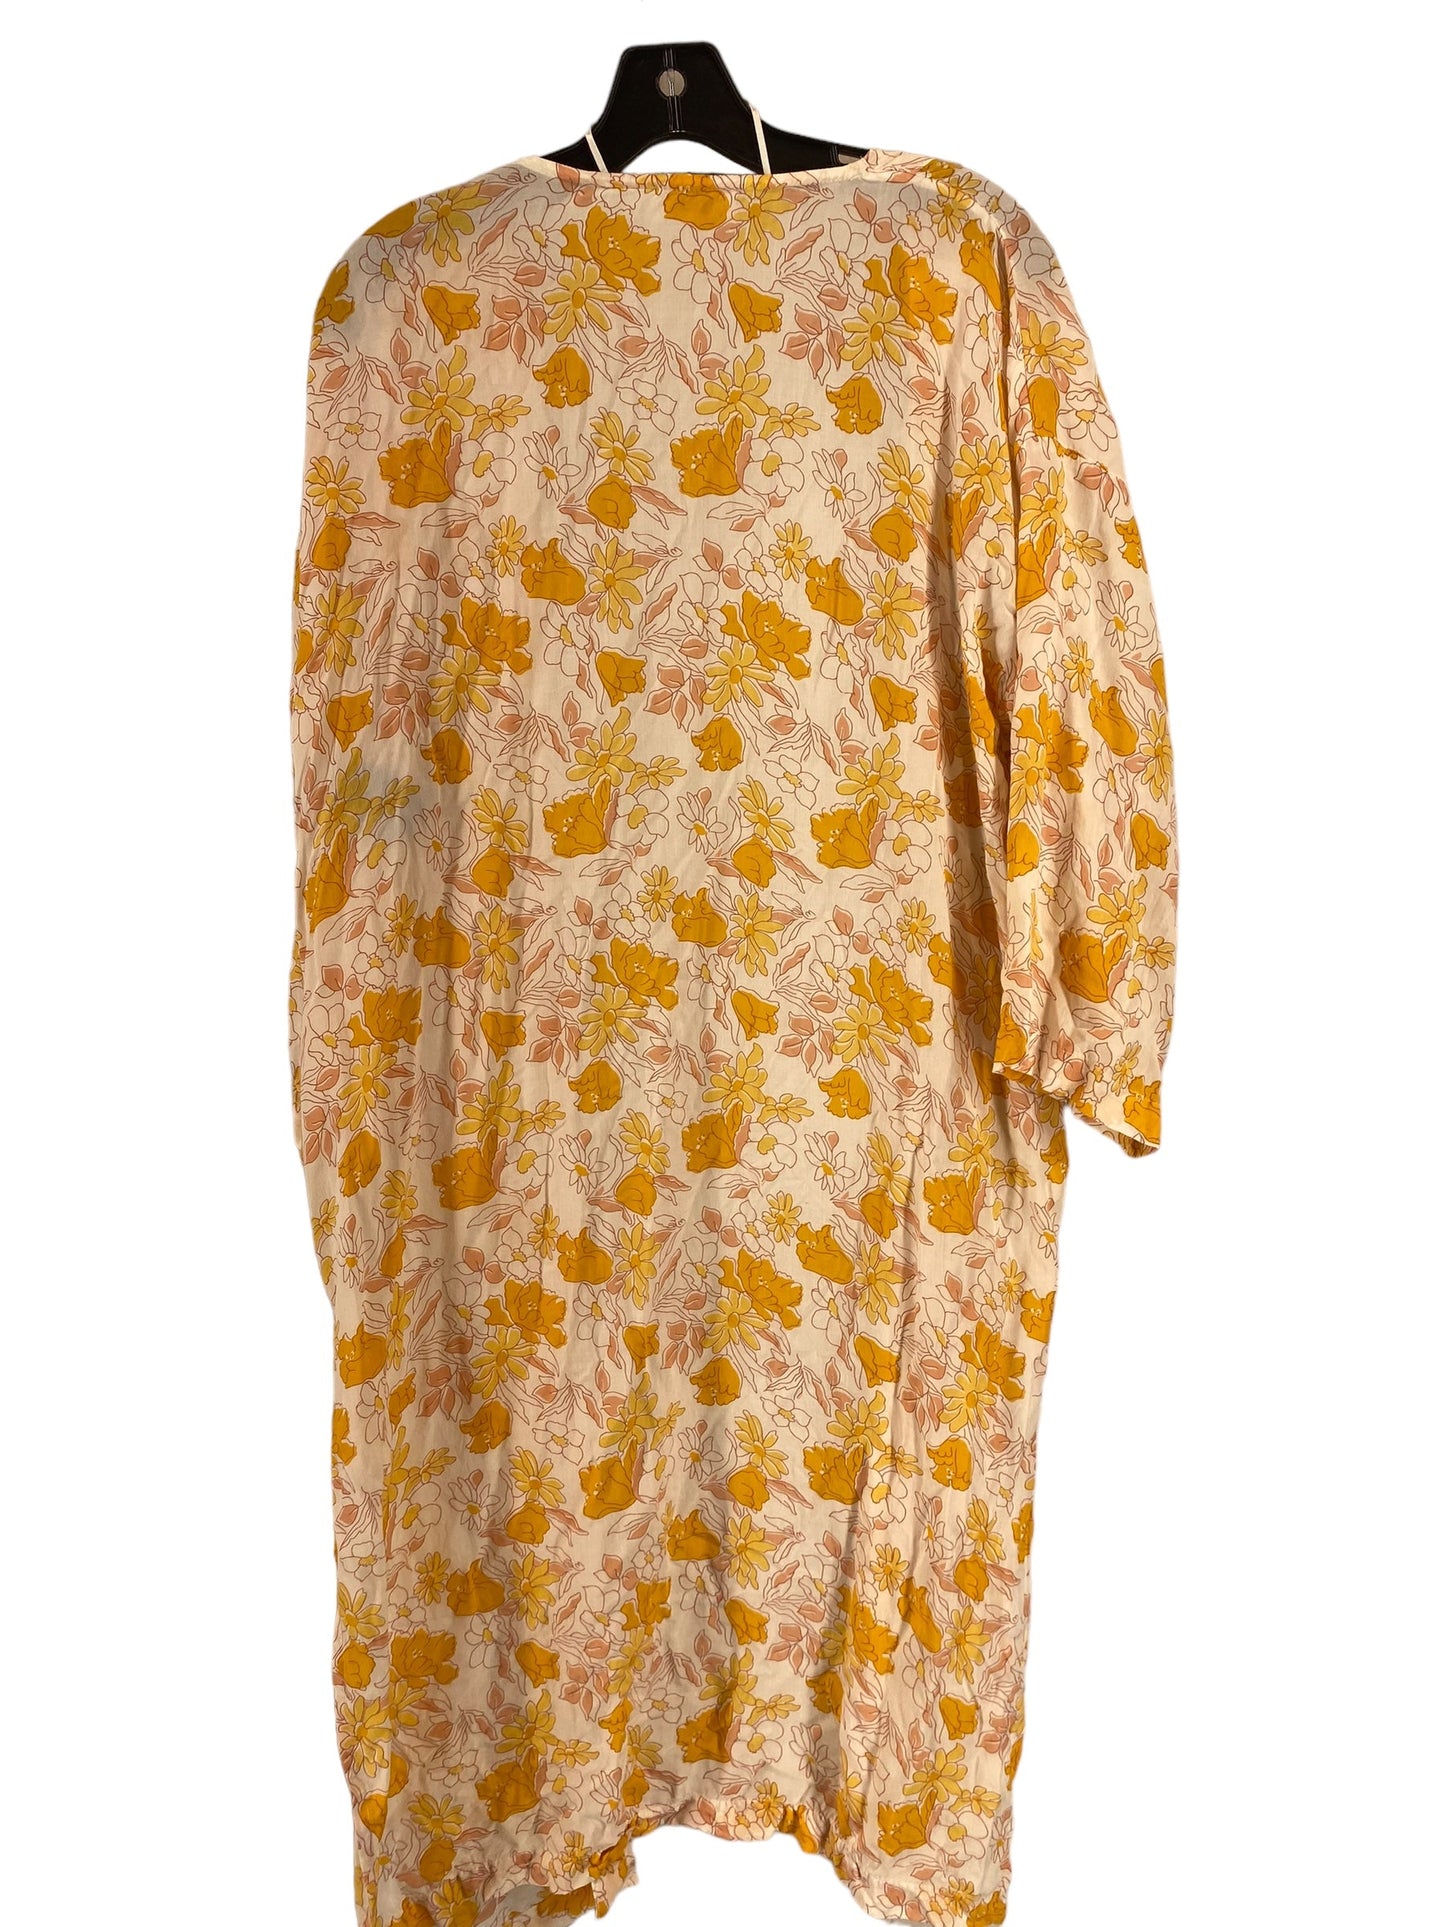 Kimono By Loft  Size: Xs